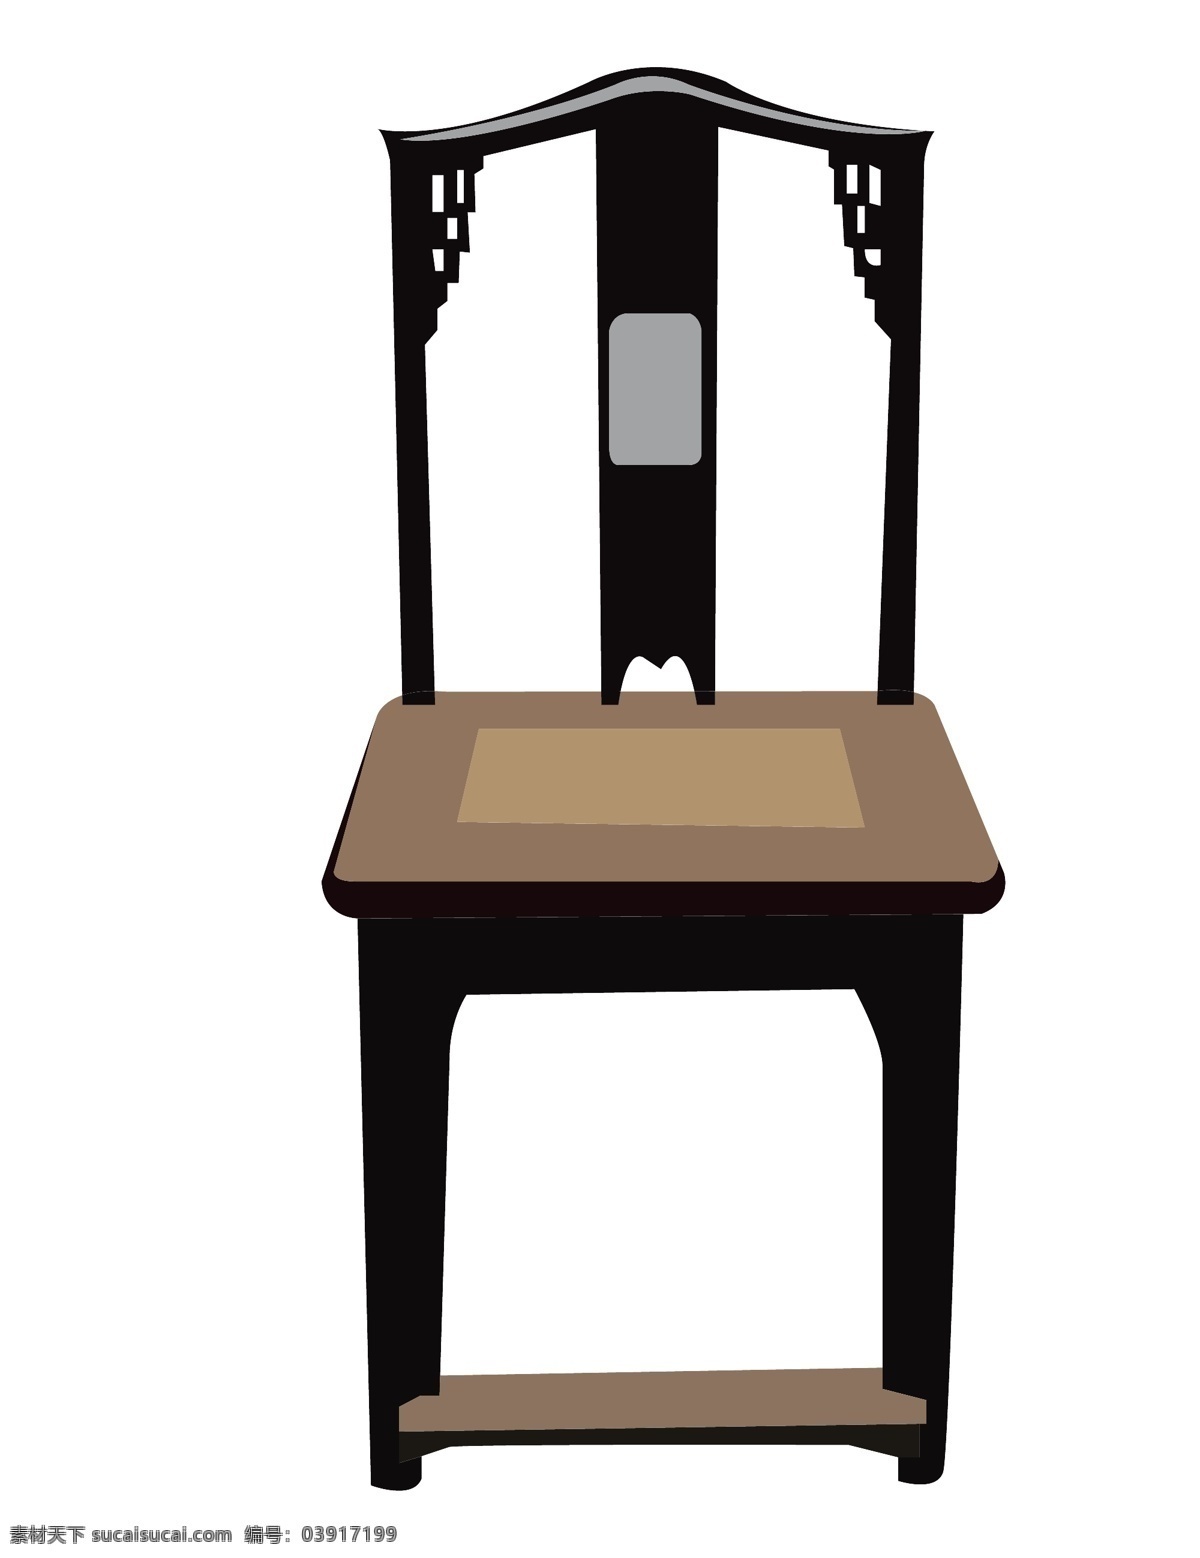 黄色 椅子 装饰 插画 黄色的椅子 木头椅子 漂亮的椅子 椅子装饰 椅子插画 立体椅子 卡通椅子